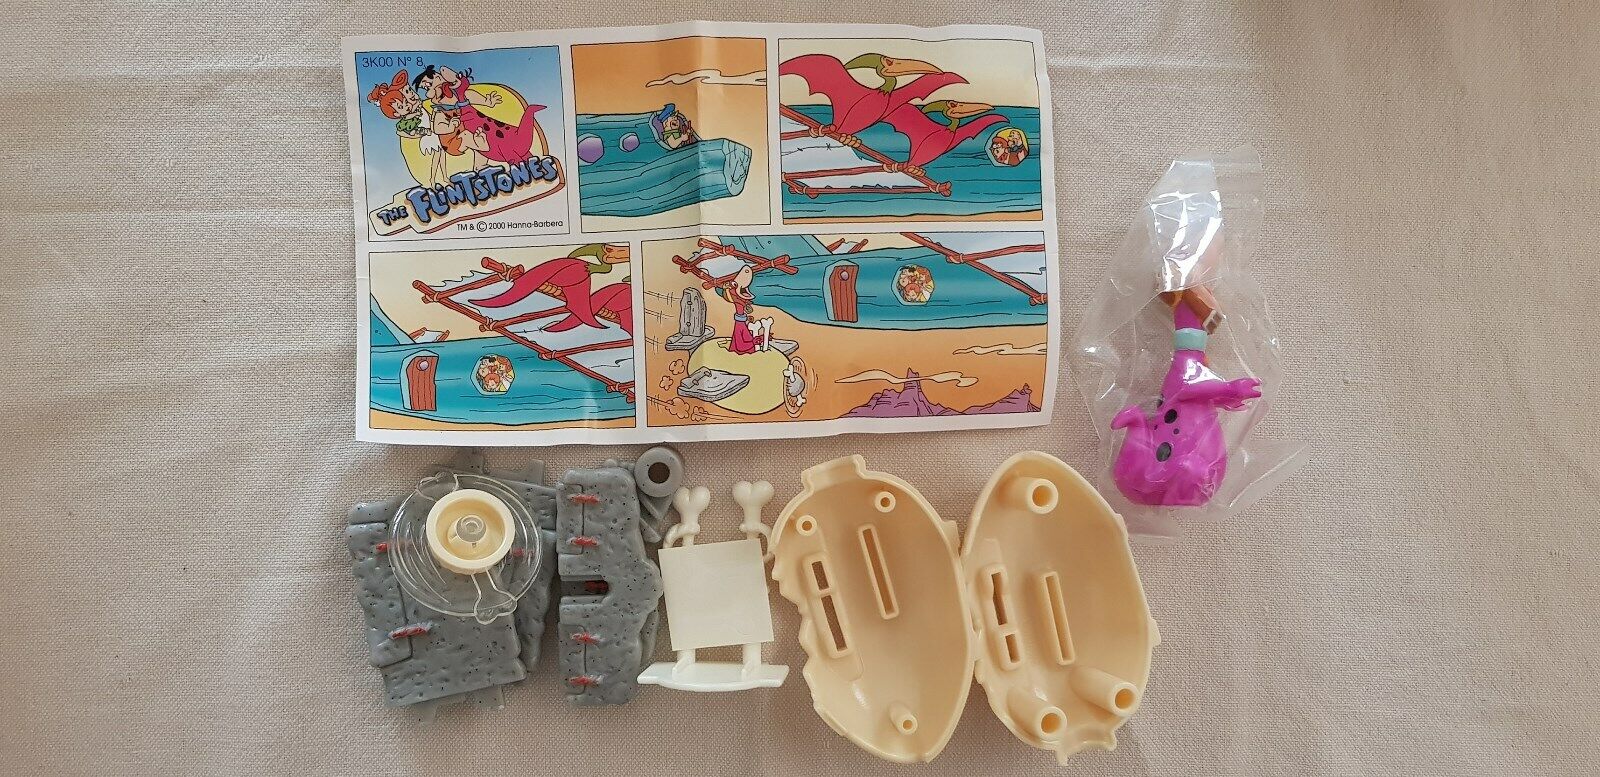 Maxi U-Ei Toys Flintstones Ostern 2000 Italien mit BPZ 3K00 n8  Figur Top Rar